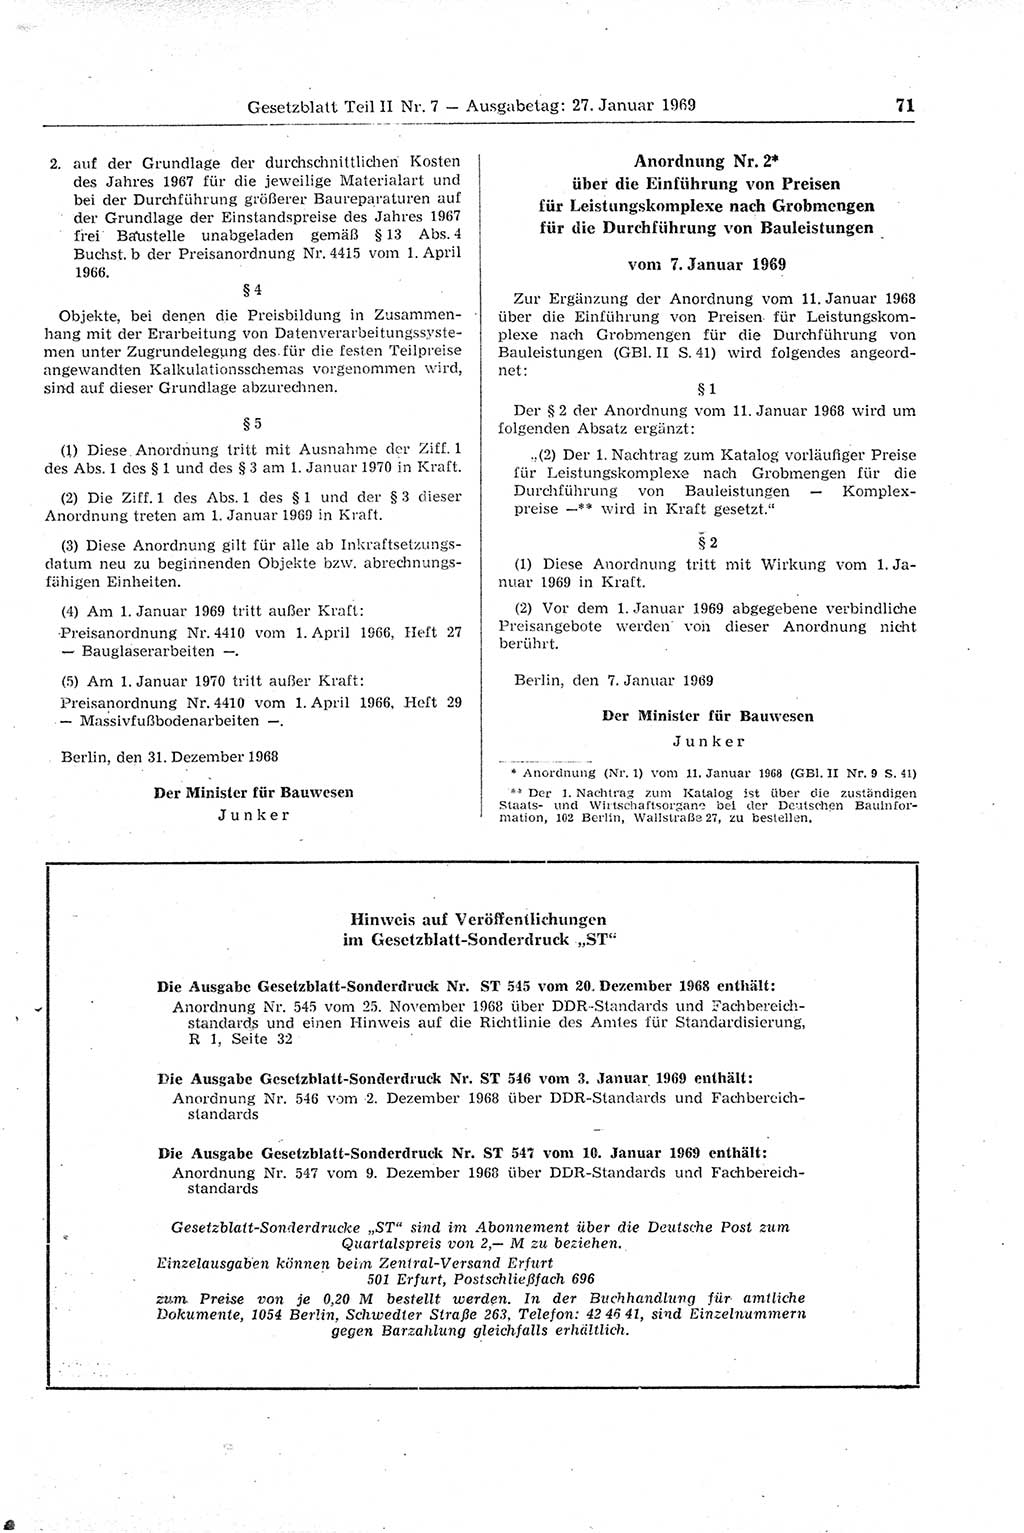 Gesetzblatt (GBl.) der Deutschen Demokratischen Republik (DDR) Teil ⅠⅠ 1969, Seite 71 (GBl. DDR ⅠⅠ 1969, S. 71)